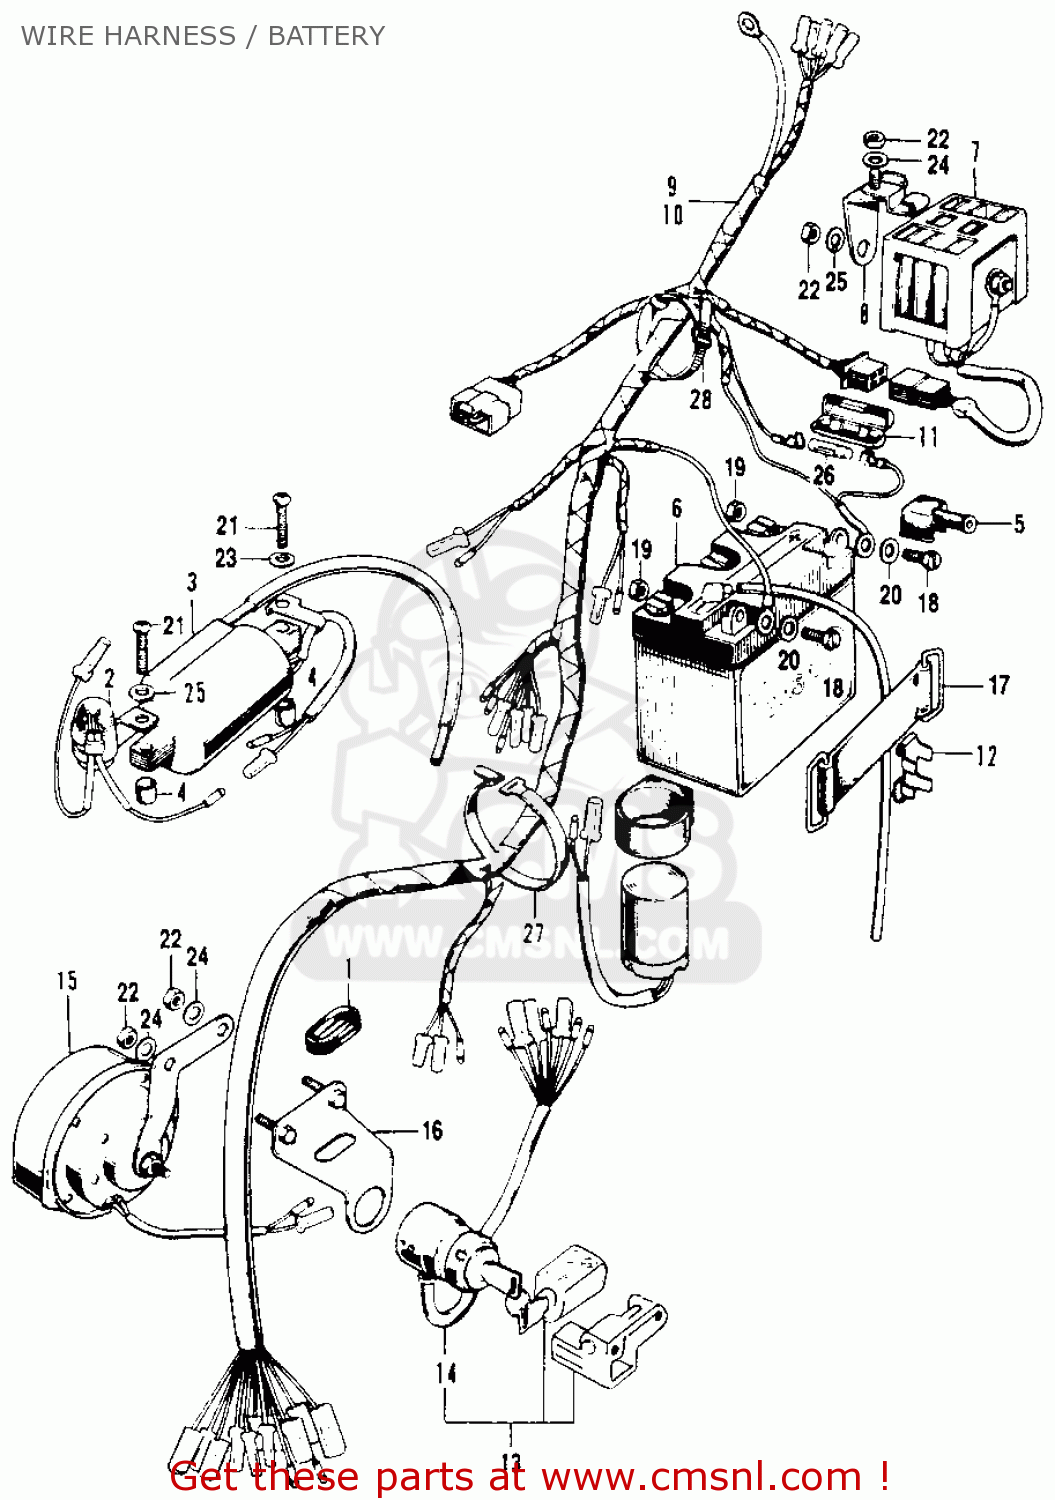 100cc honda dirt bike 1977 wiring diagram